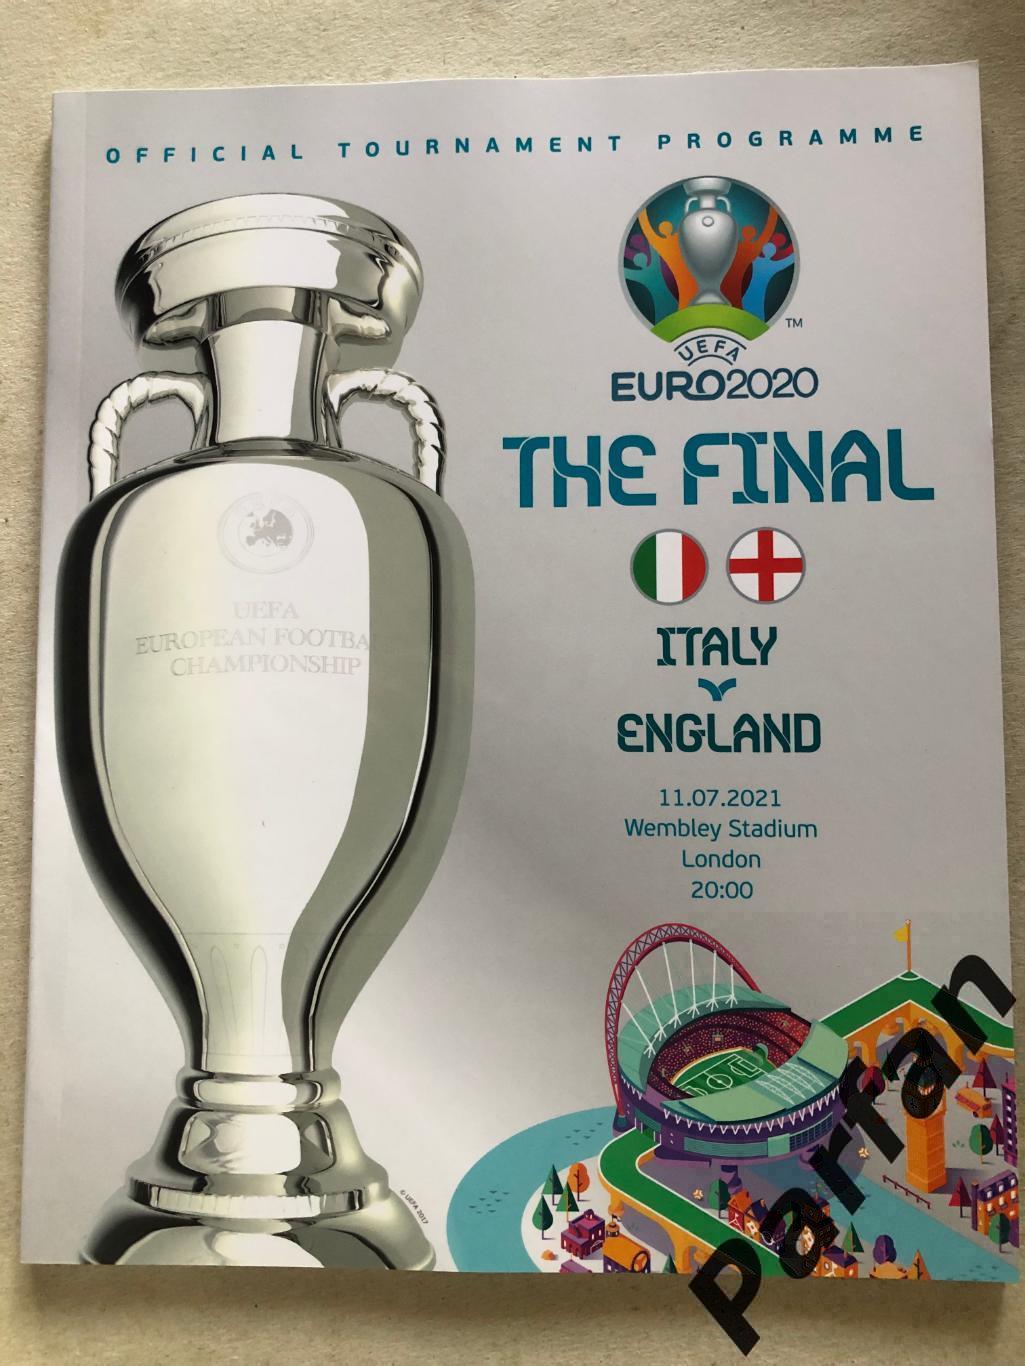 ЄВРО Чемпіонат Європи по футболу Англія - Італія 2020/2021 Фінал